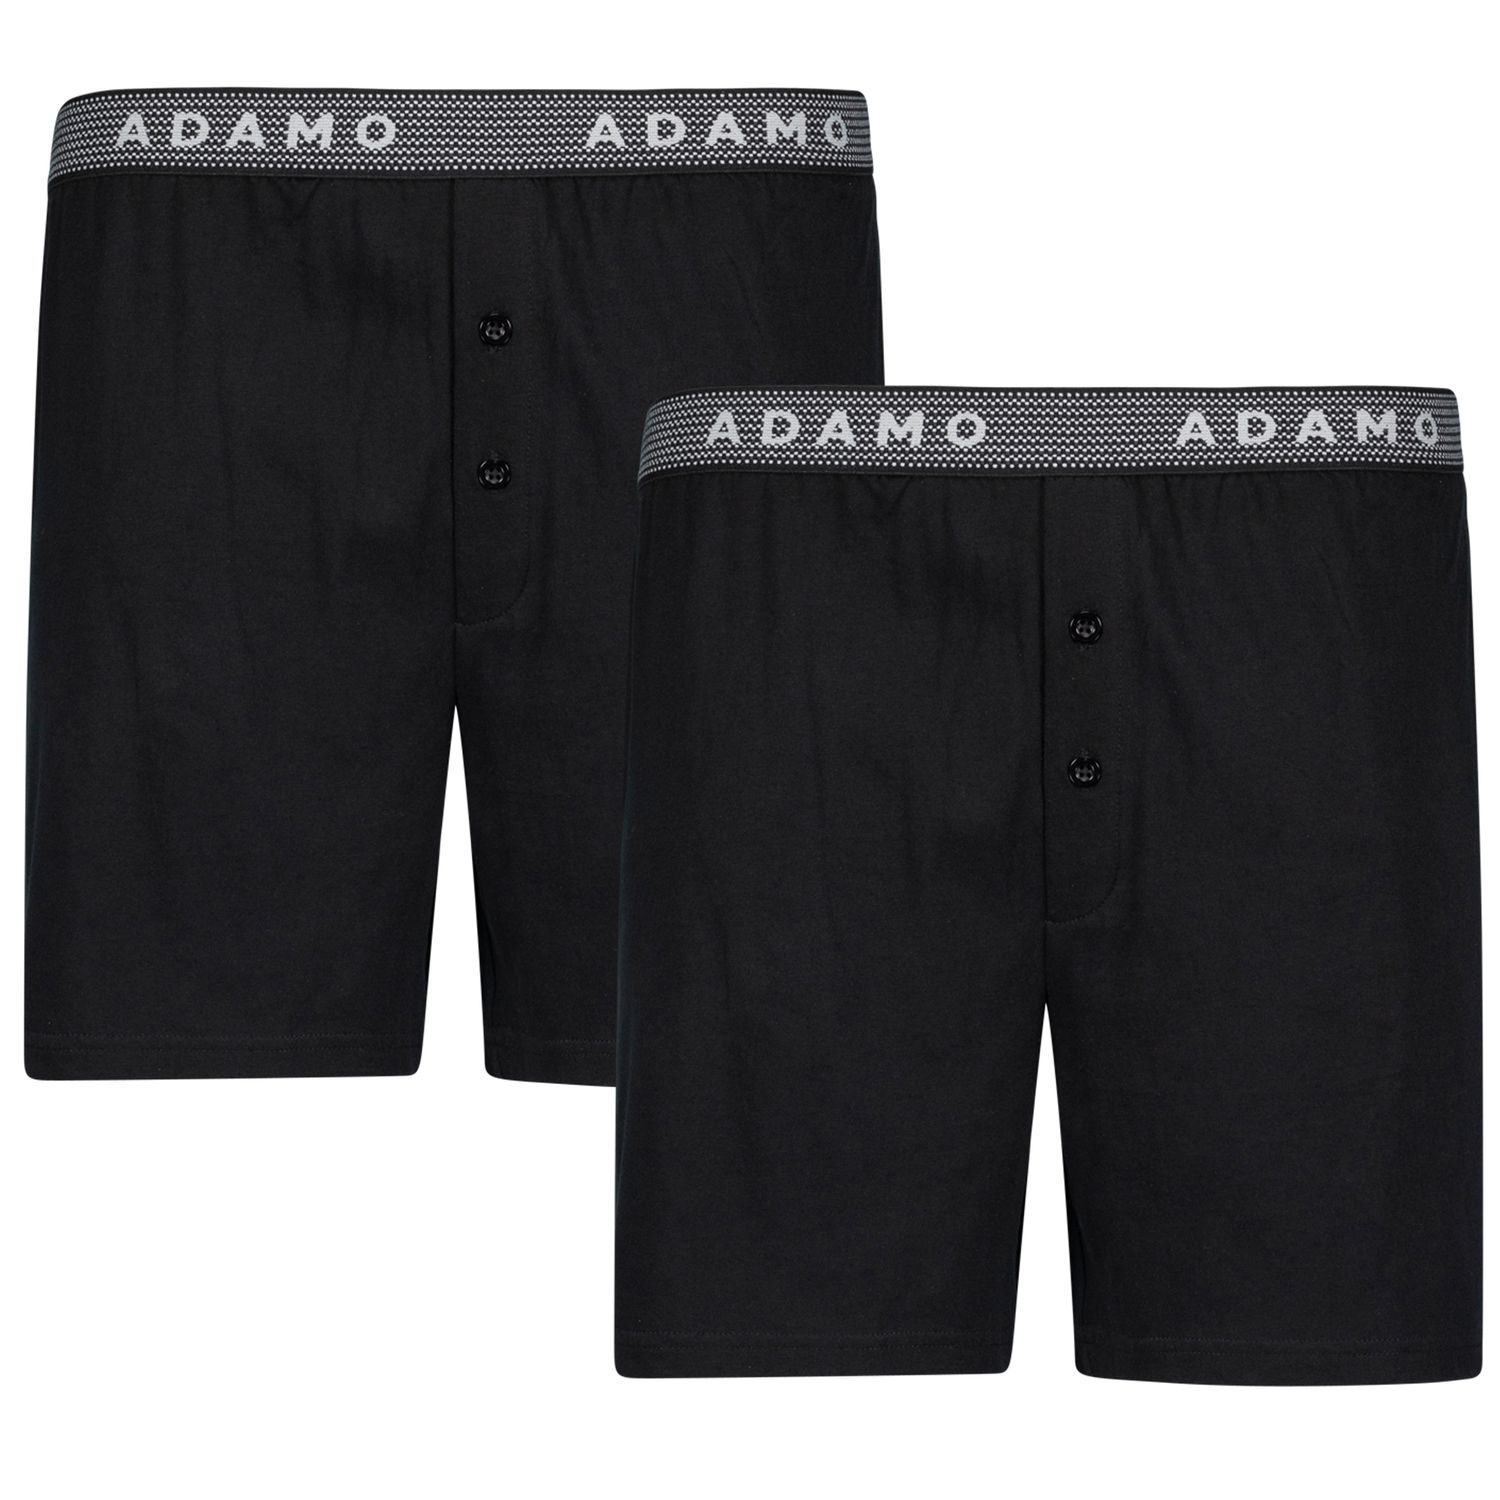 Boxers noir "Jonas" by ADAMO dans un emballage double - grande taille jusqu'à 20